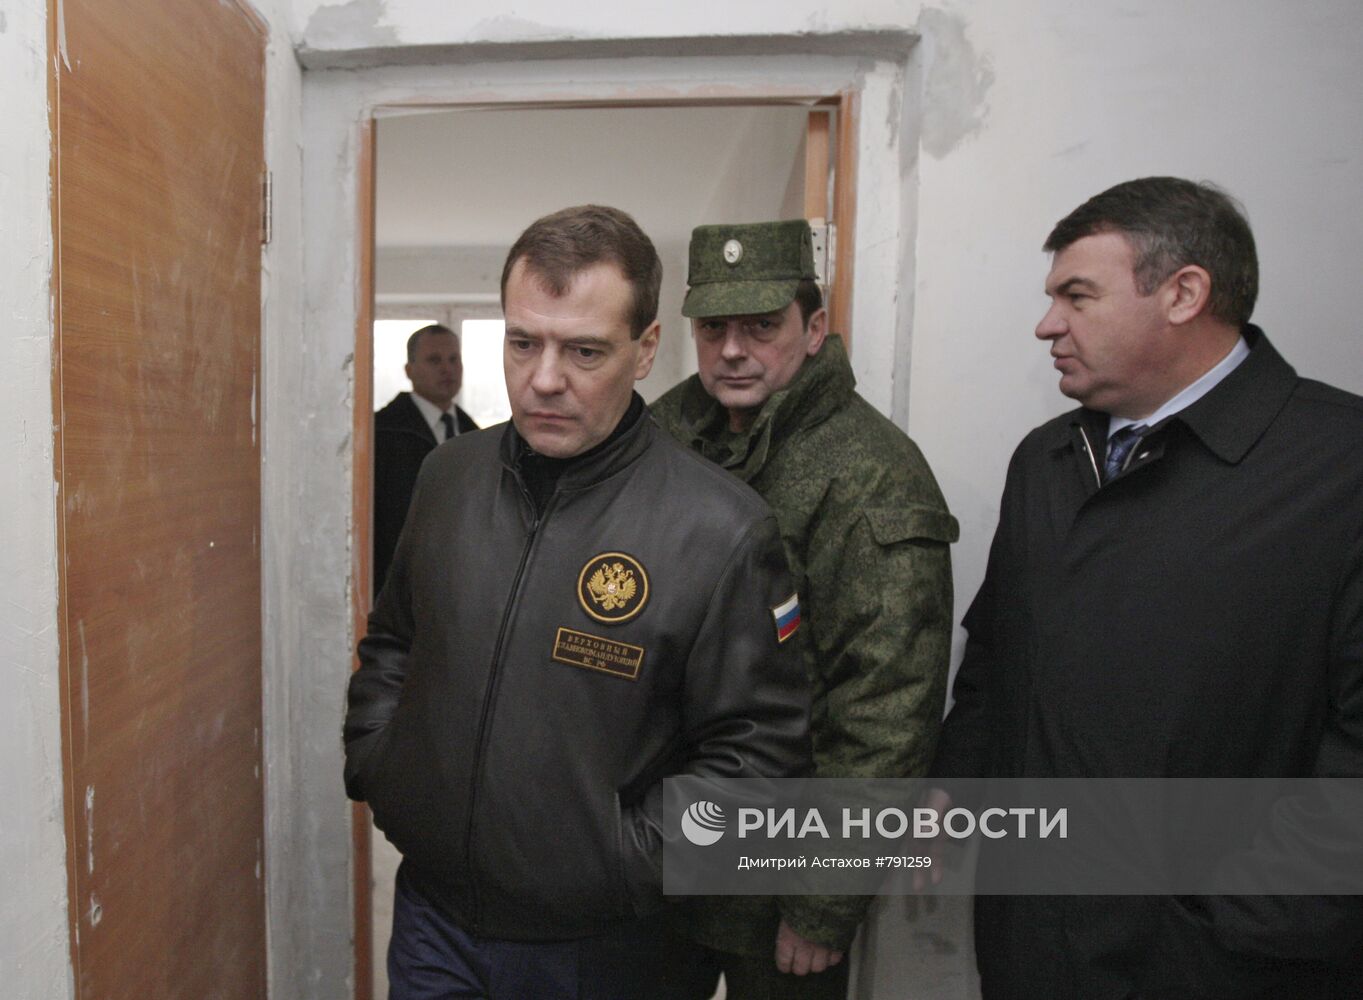 Д.Медведев посетил военный городок в Подмосковье